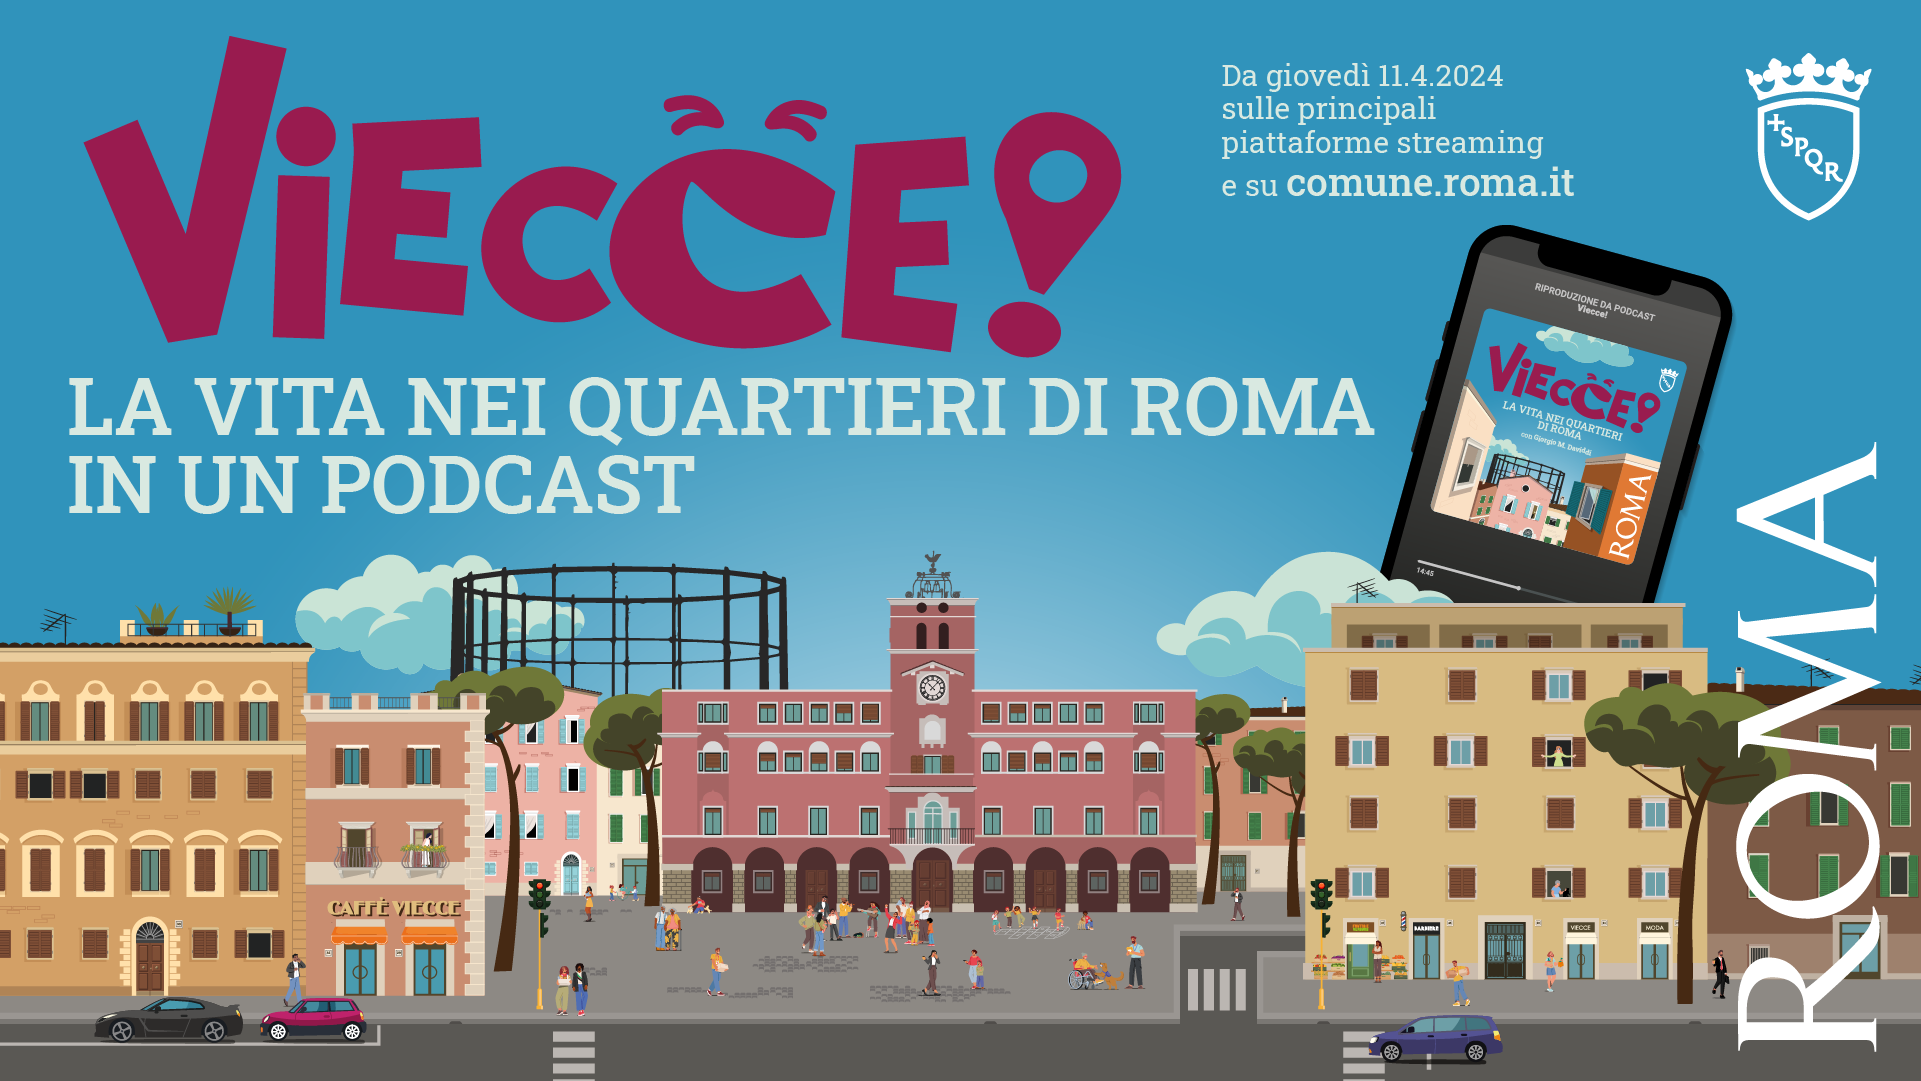 Viecce: Un podcast che racconta Roma attraverso i suoi quartieri!